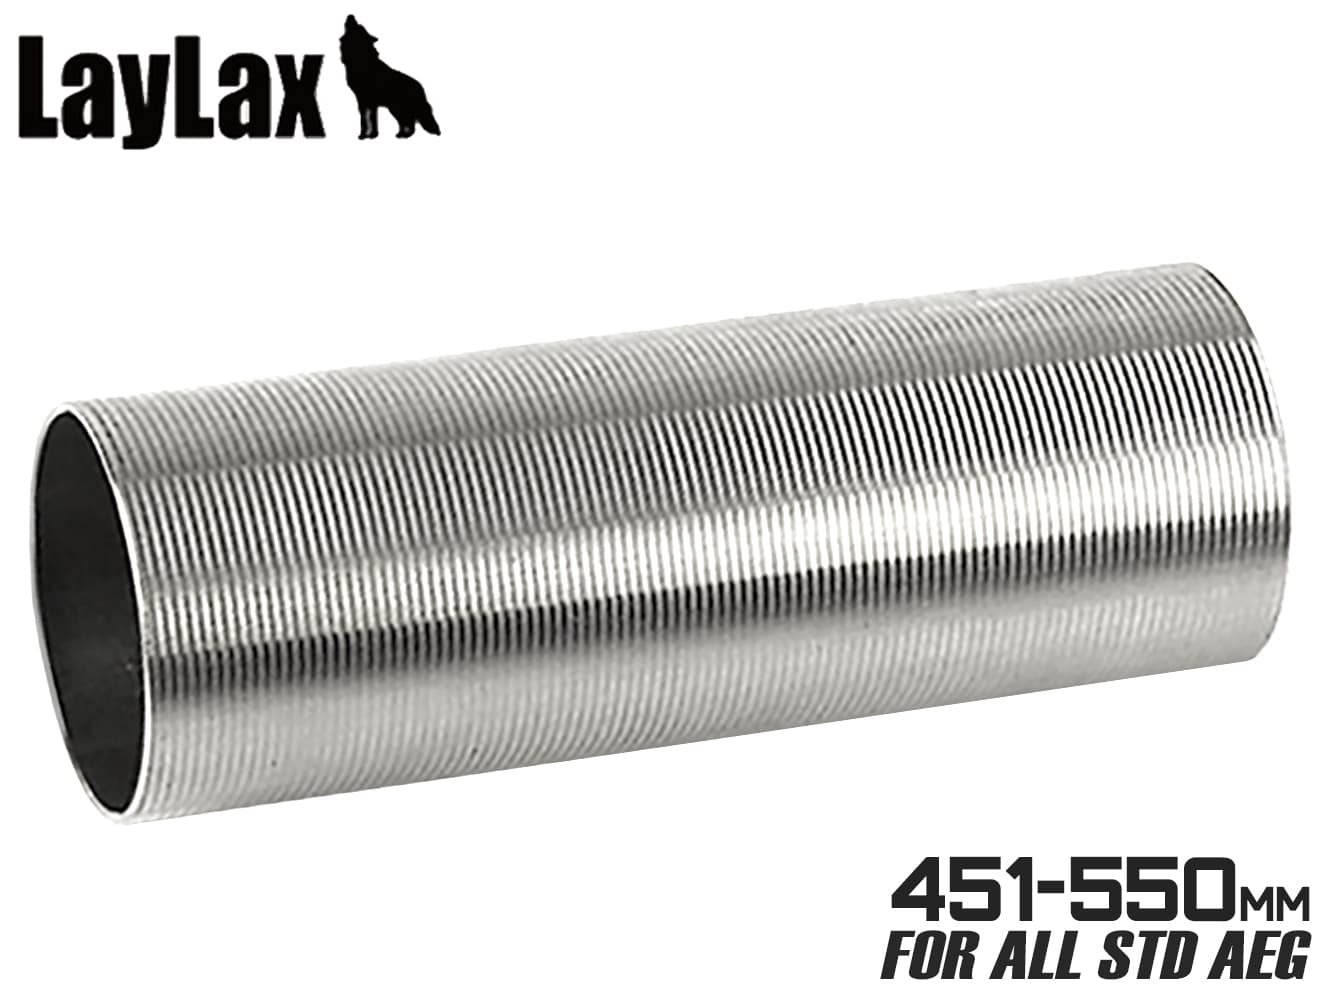 LayLax LayLax ステンレスハードシリンダー Type A 電動ガン用 PROMETHEUS ライラクス AEG フルシリンダー